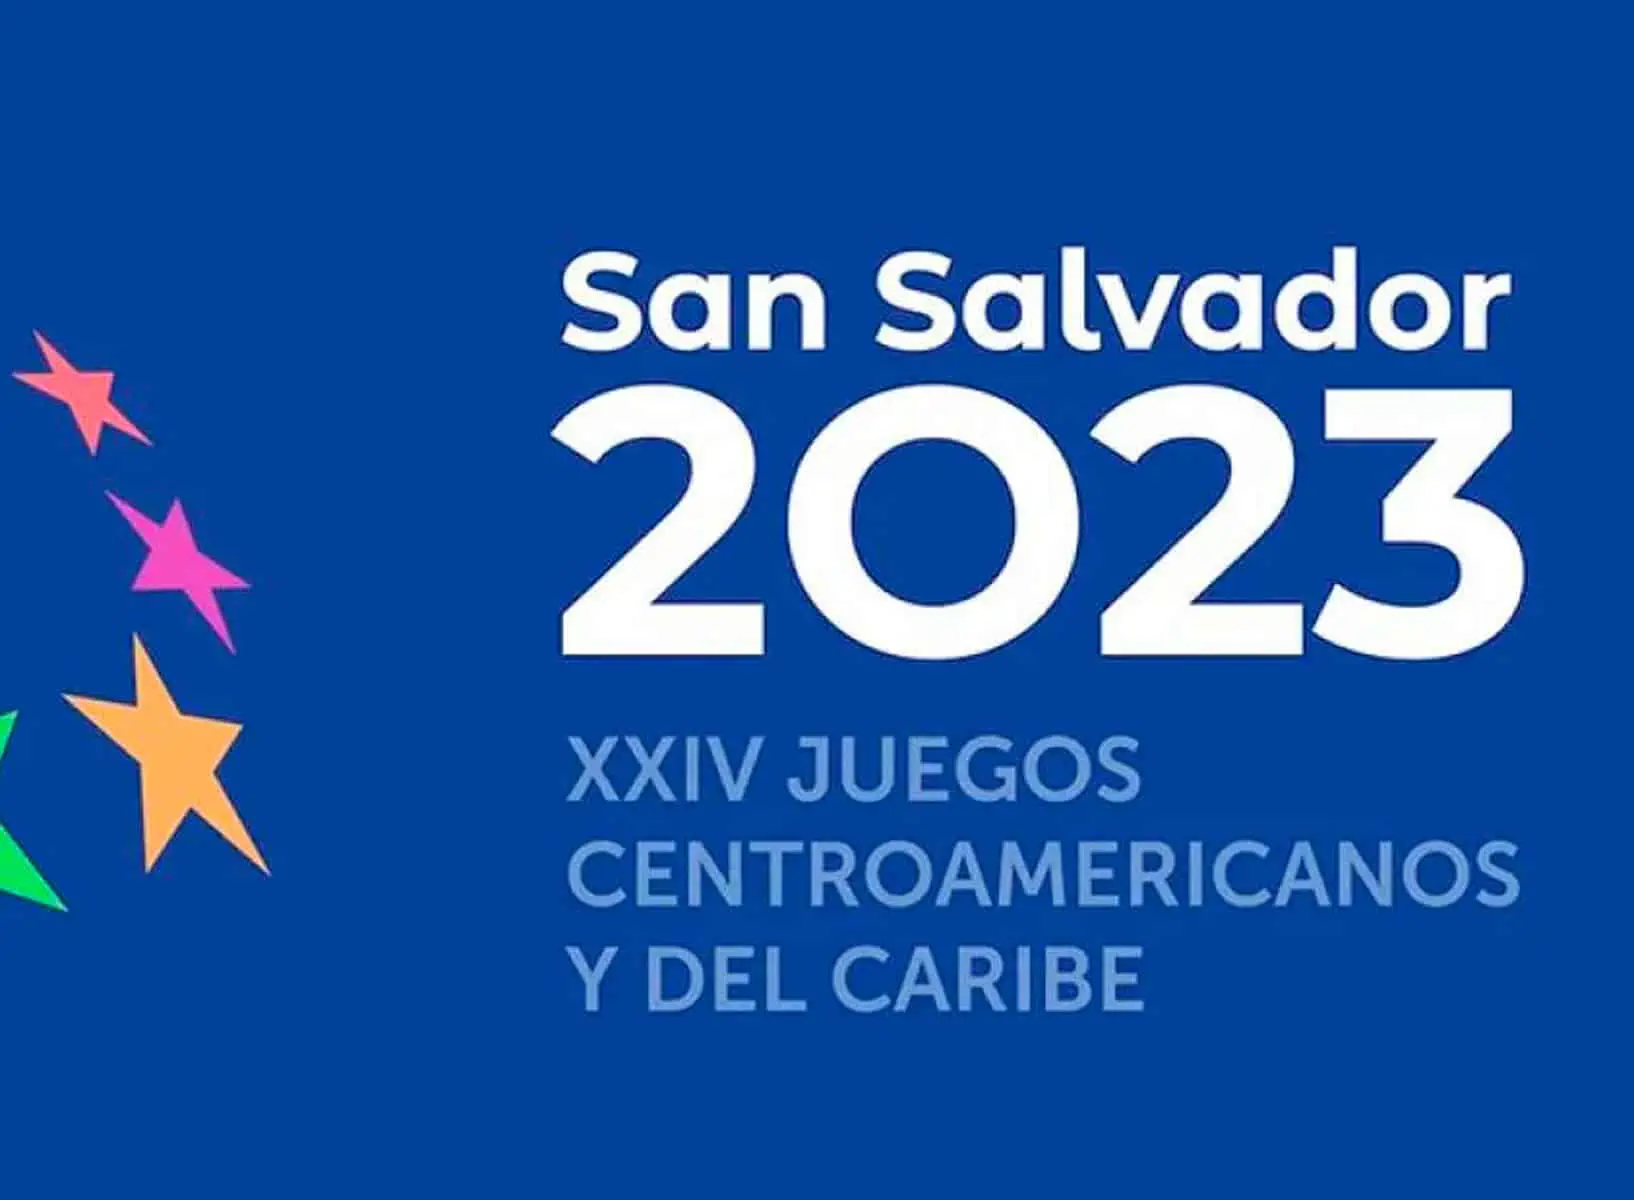 Avanza el Medallero Cubano en Juegos Centroamericanos y del Caribe San Salvador 2023